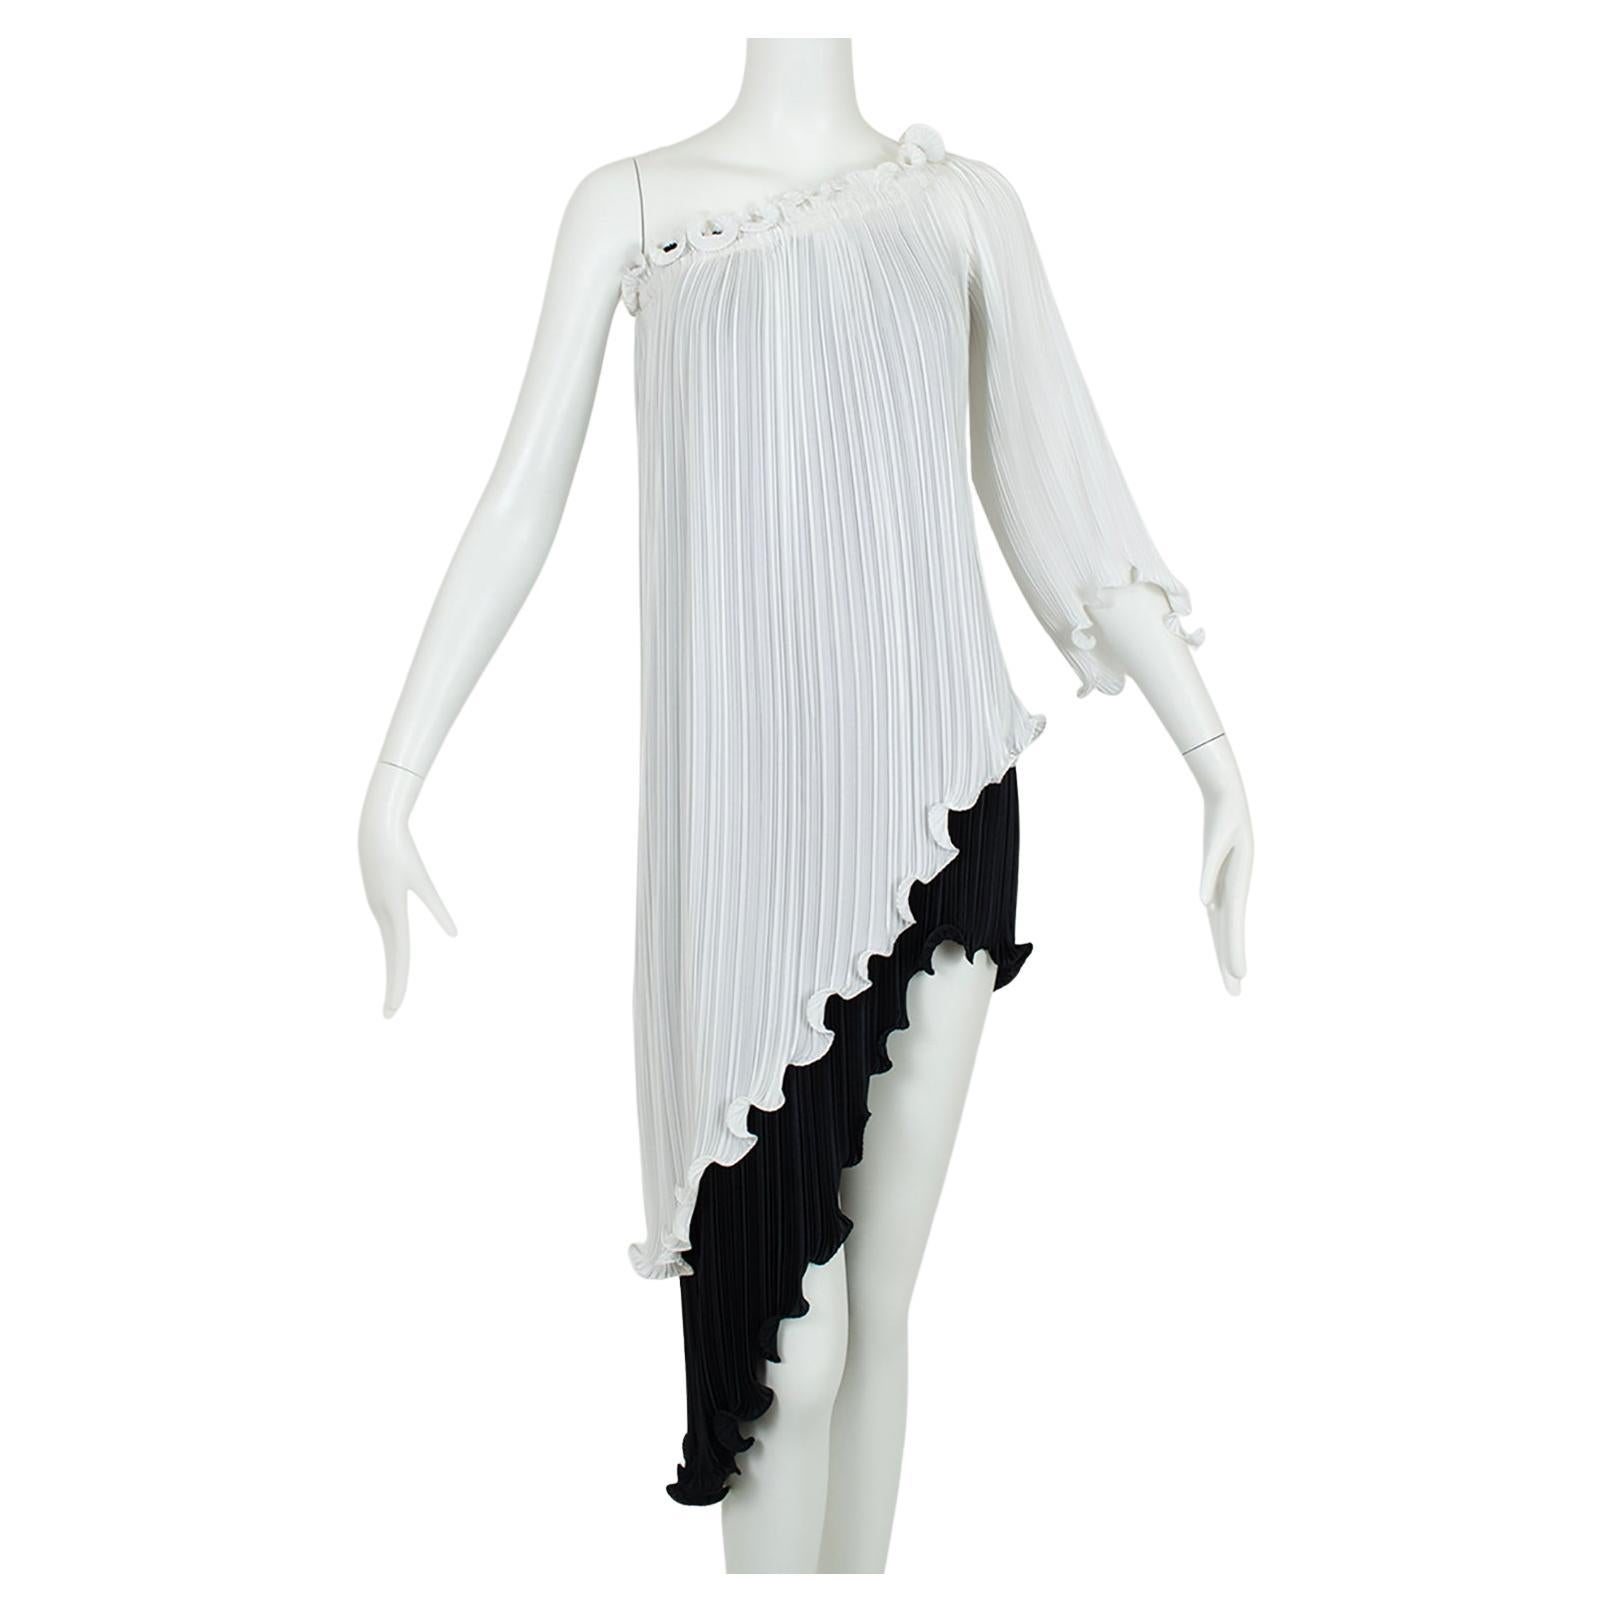 New Tarquin Ebker Black White Asymmetrical Delphos Dress w Provenance – S, 1978 For Sale